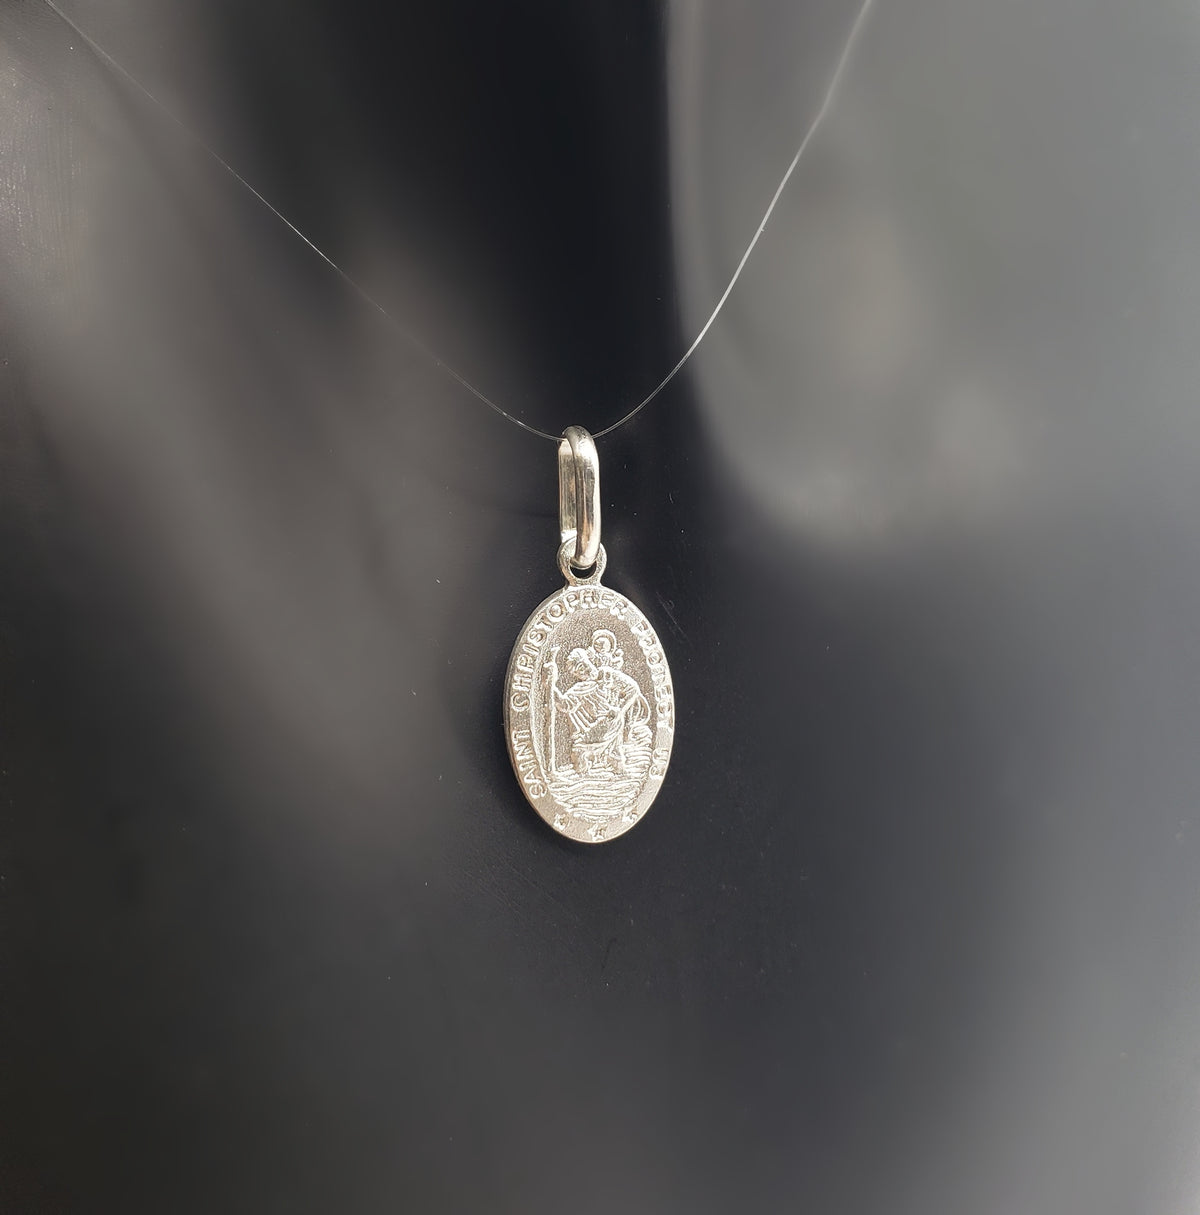 Colgante detallado de San Cristóbal con forma ovalada de plata de ley 925, 29,4 mm x 17,8 mm